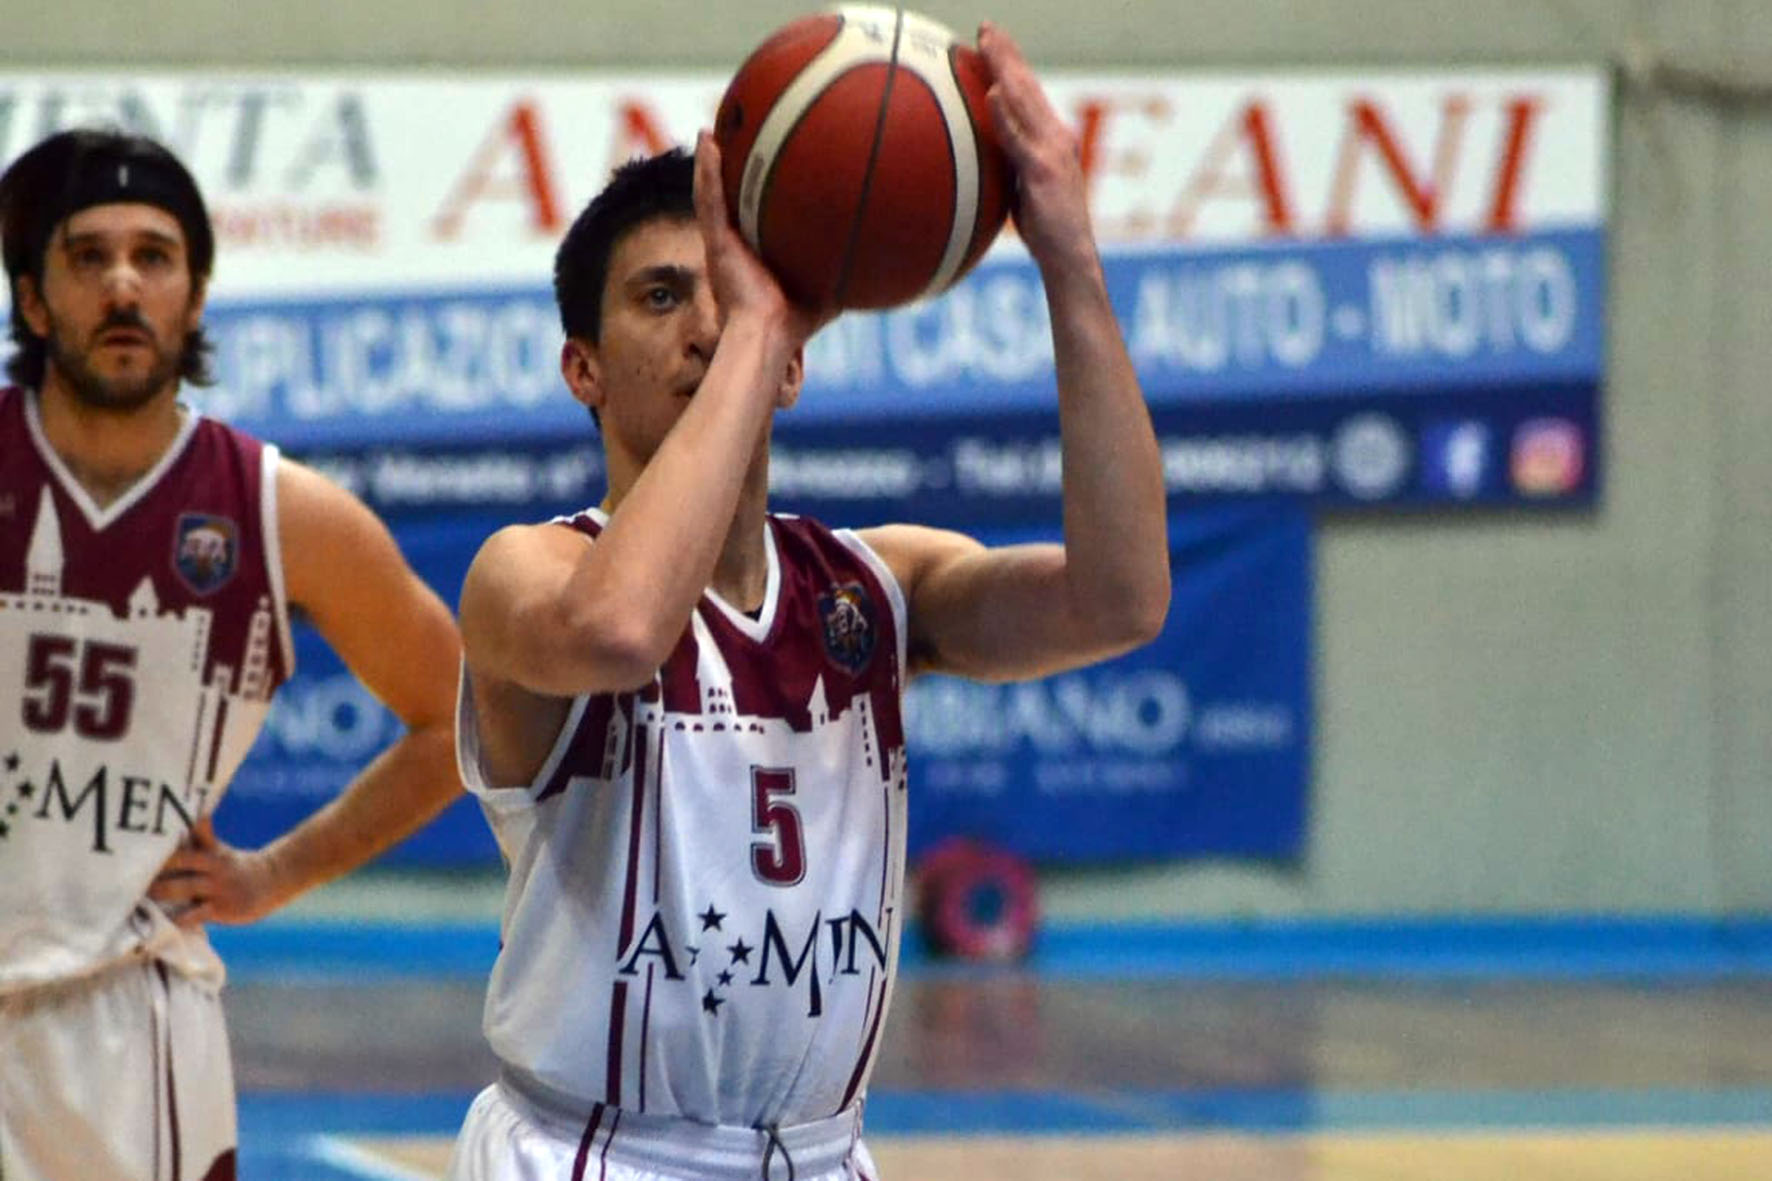 La Scuola Basket Arezzo è tornata in campo con tutti i suoi atleti